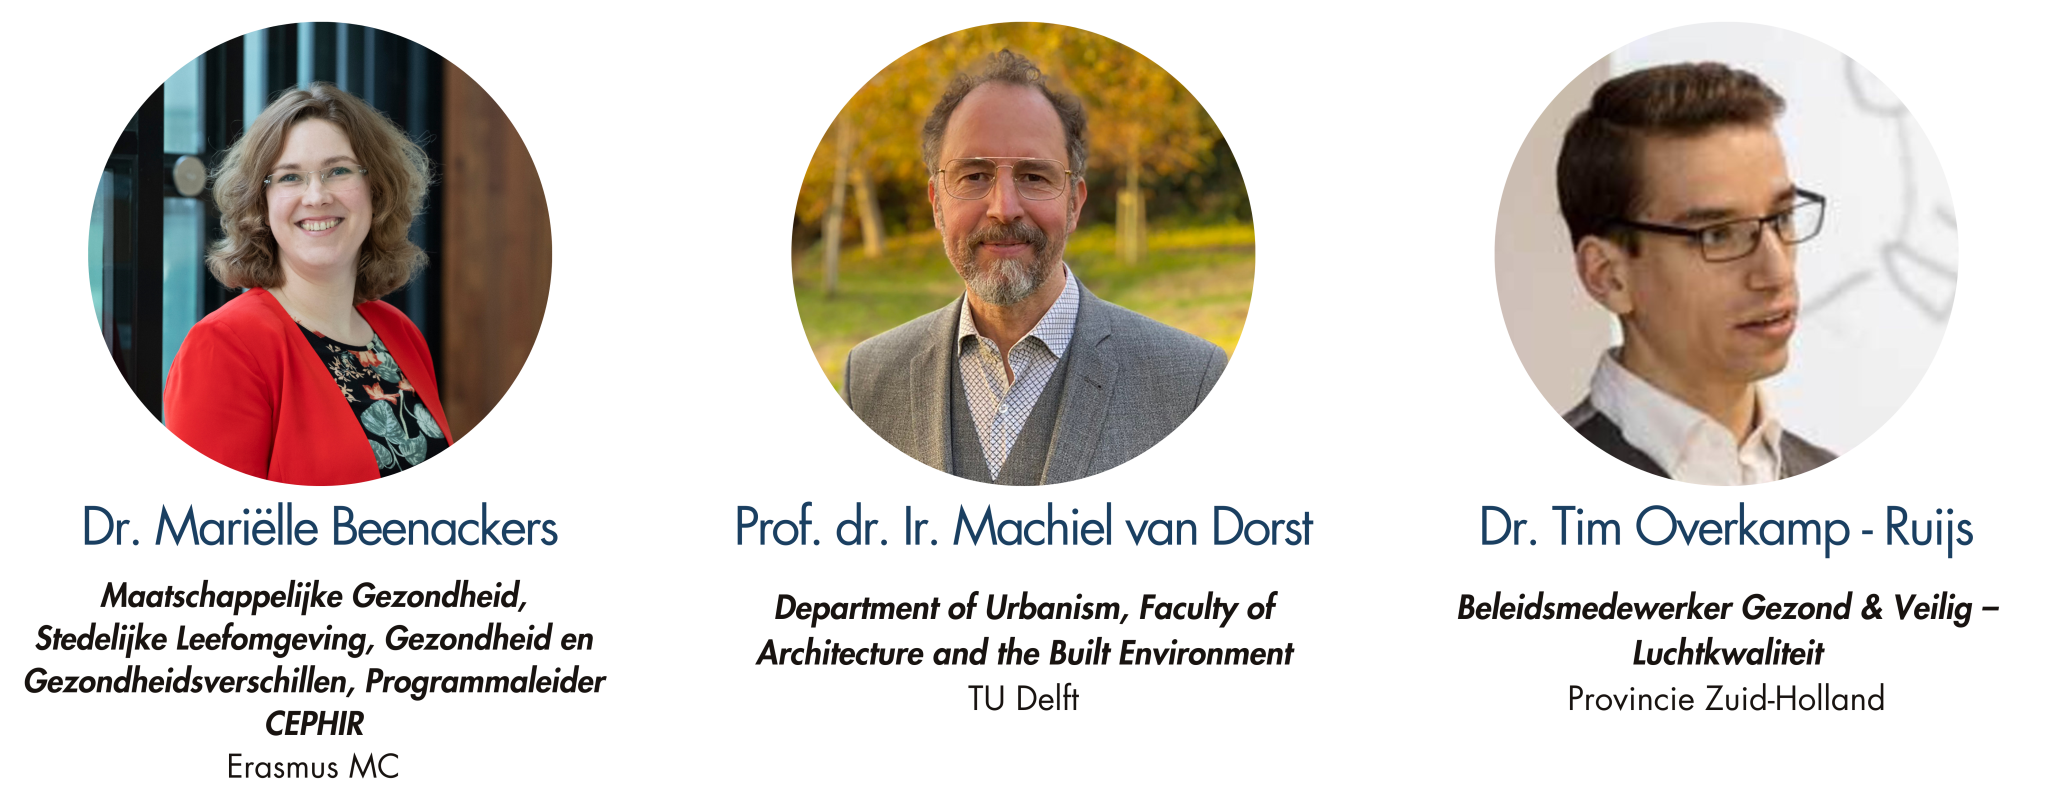 Thema 4: Dr. Mariëlle Beenackers, Prof. dr. Ir. Machiel van Dorst en Dr. Tim Overkamp - Ruijs